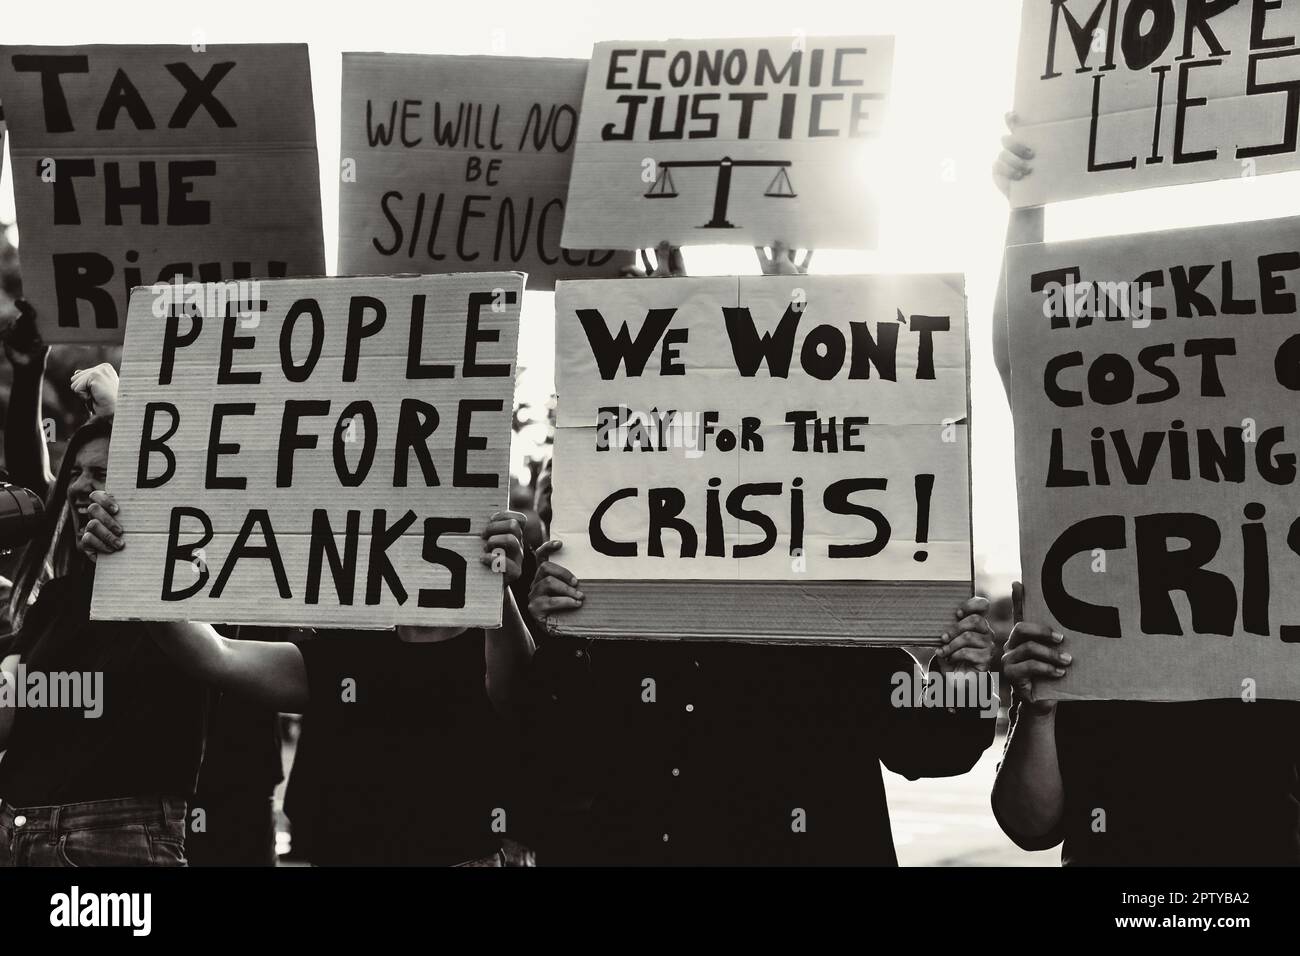 Les personnes protestant contre la crise financière et l'inflation mondiale - concept d'activisme de justice économique - montage noir et blanc Banque D'Images